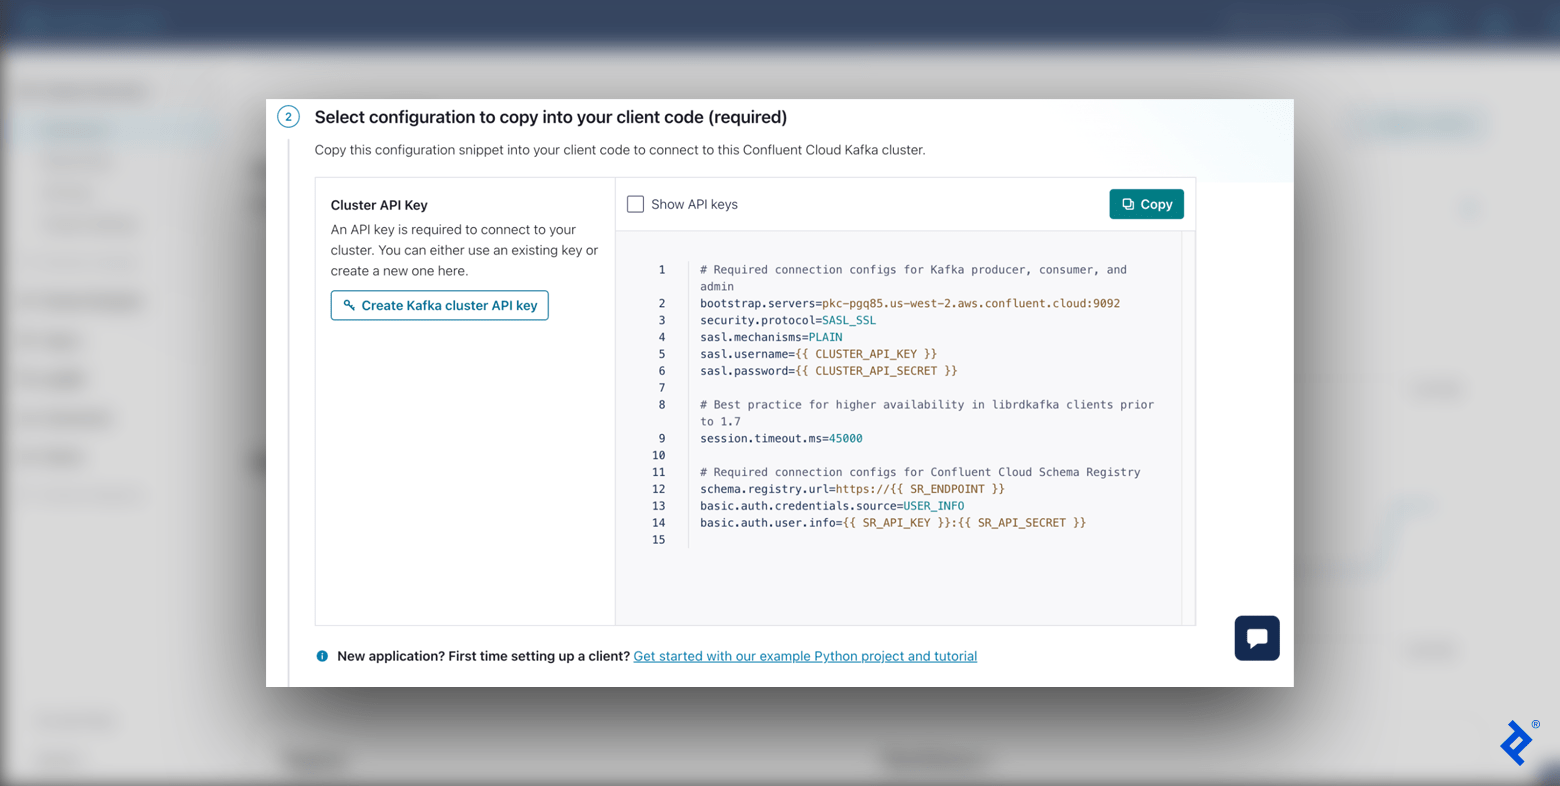 صفحه Confluent Clients مرحله 2 (پیکربندی کد مشتری) را با تنظیم کلید API خوشه Kafka و قطعه کد پیکربندی نشان می دهد.